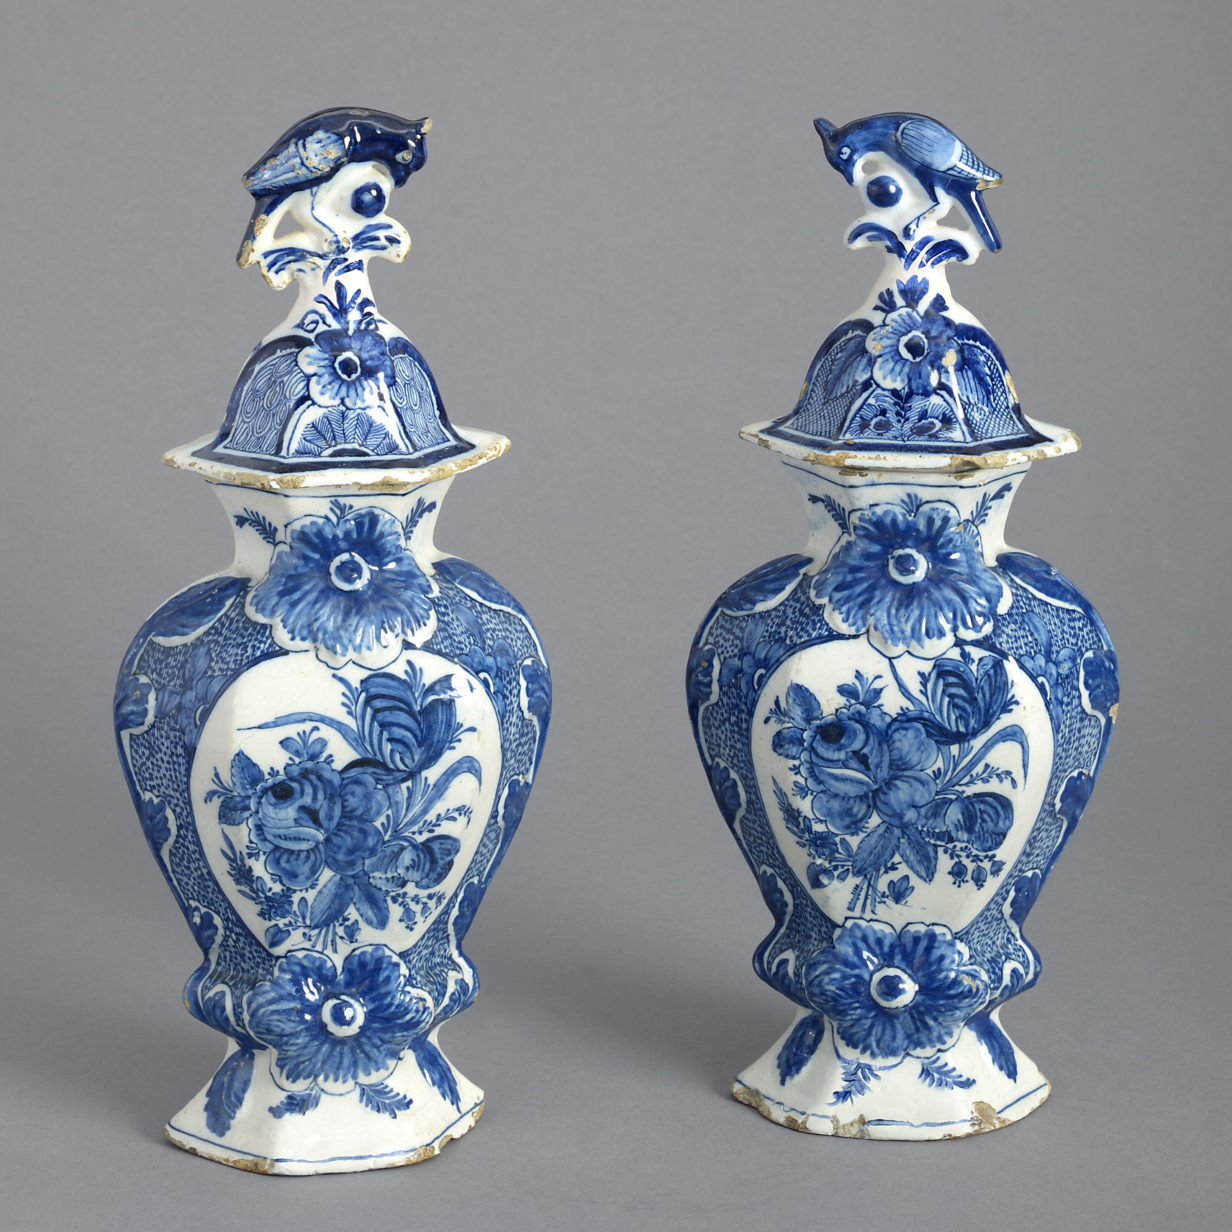 Pair of delft vases